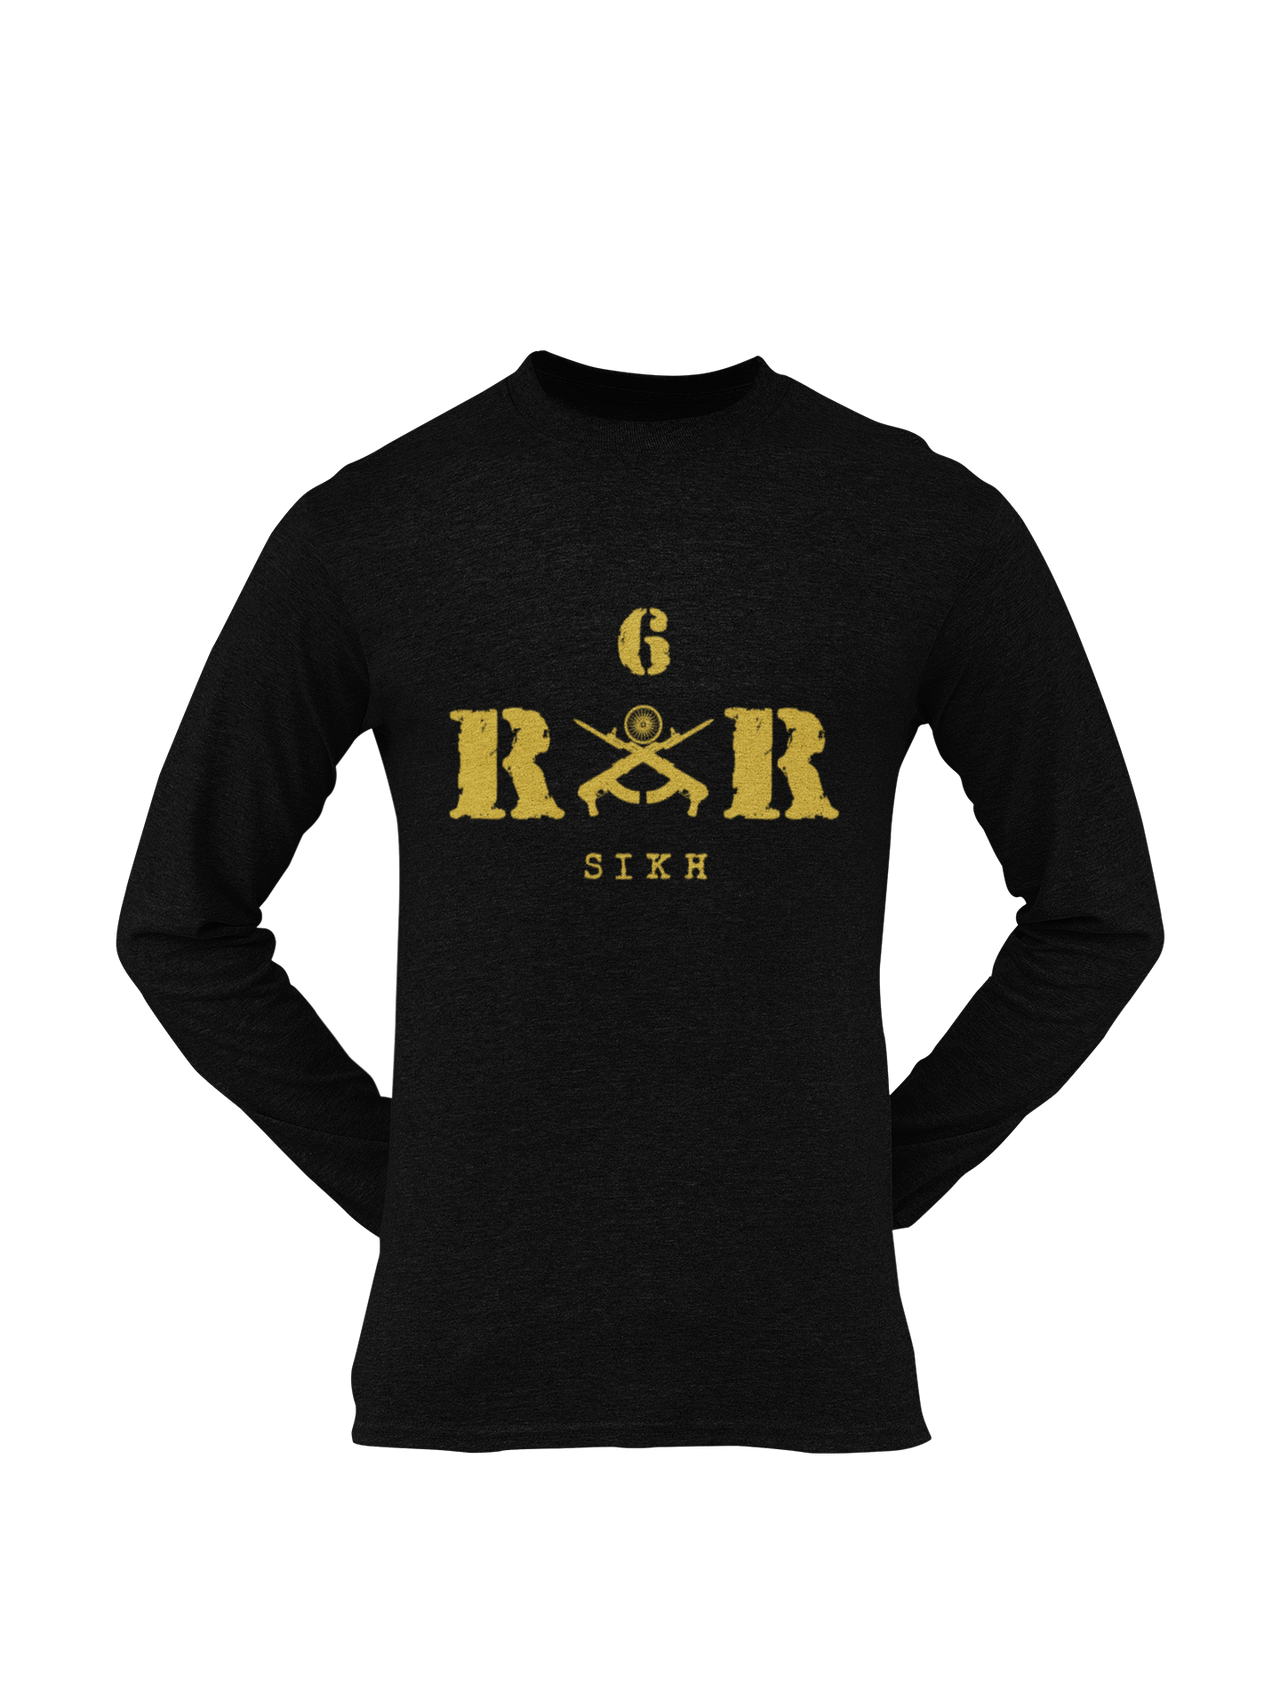 Rashtriya Rifles T-shirt - 6 RR Sikh (Men)